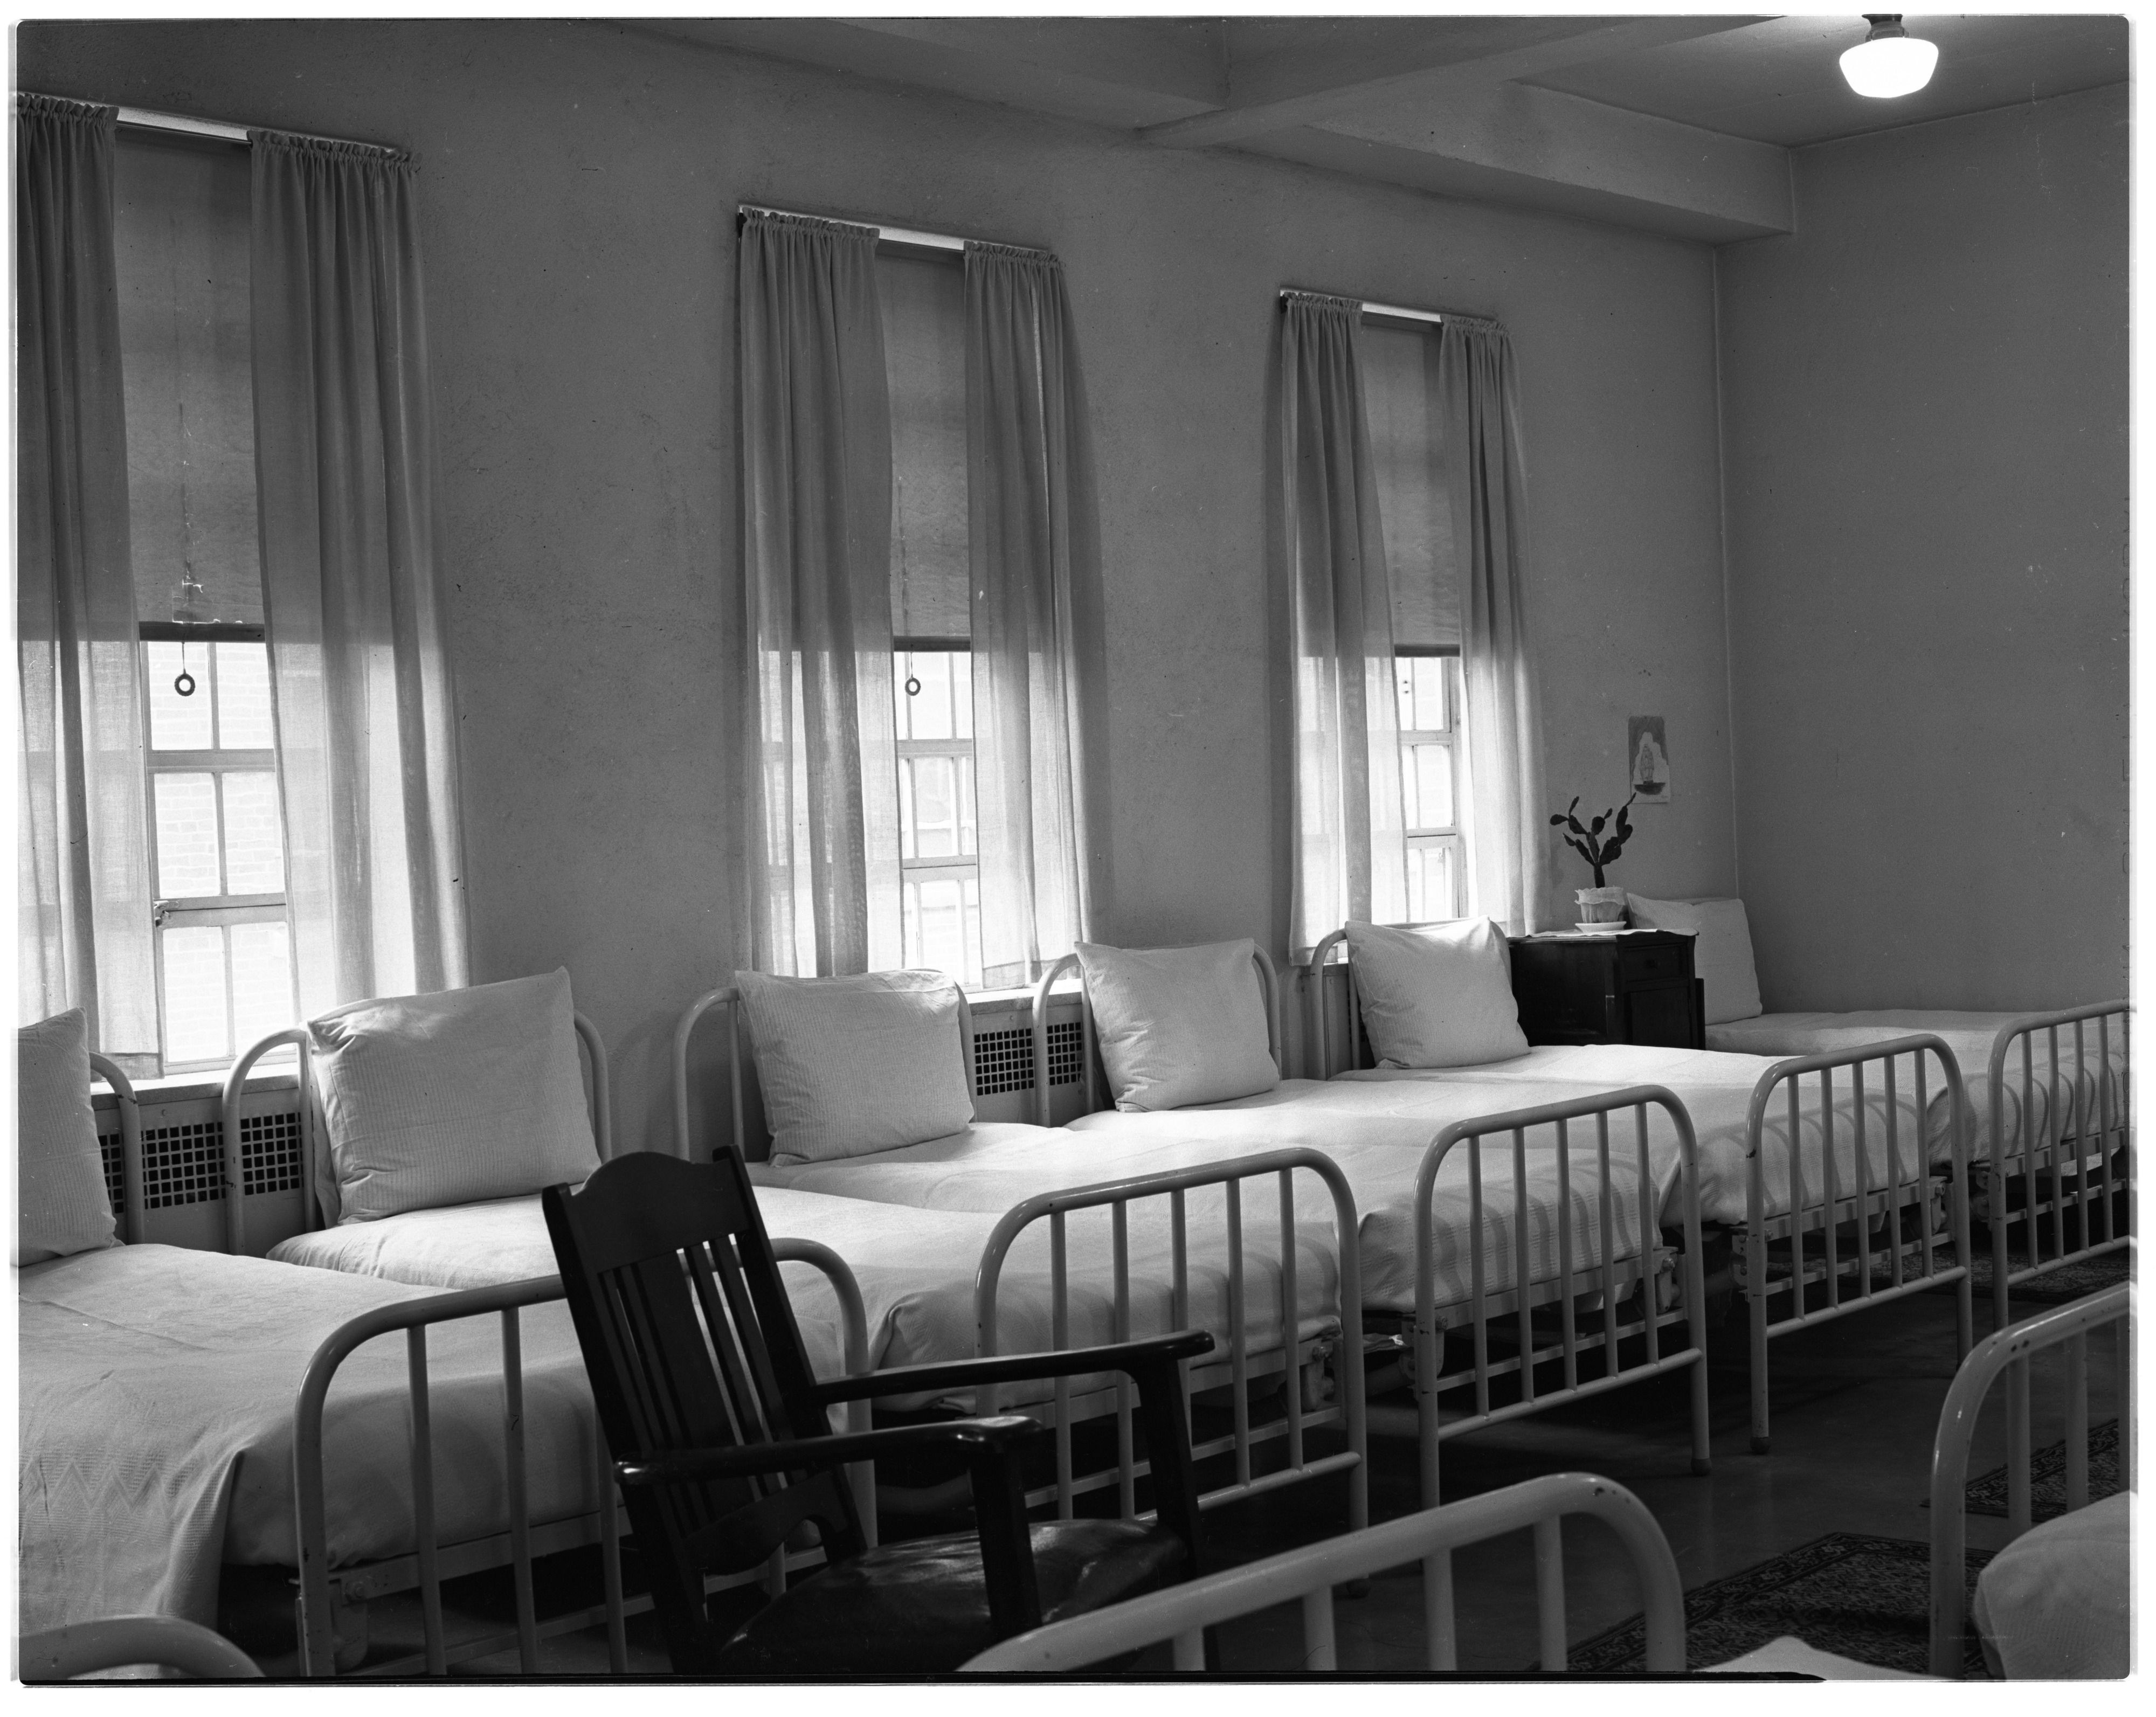 Северная психиатрическая больница. Больничная палата 19 века. Психиатрическая клиника Швеции. Психбольница комната. Комнаты в психиатрической больнице.